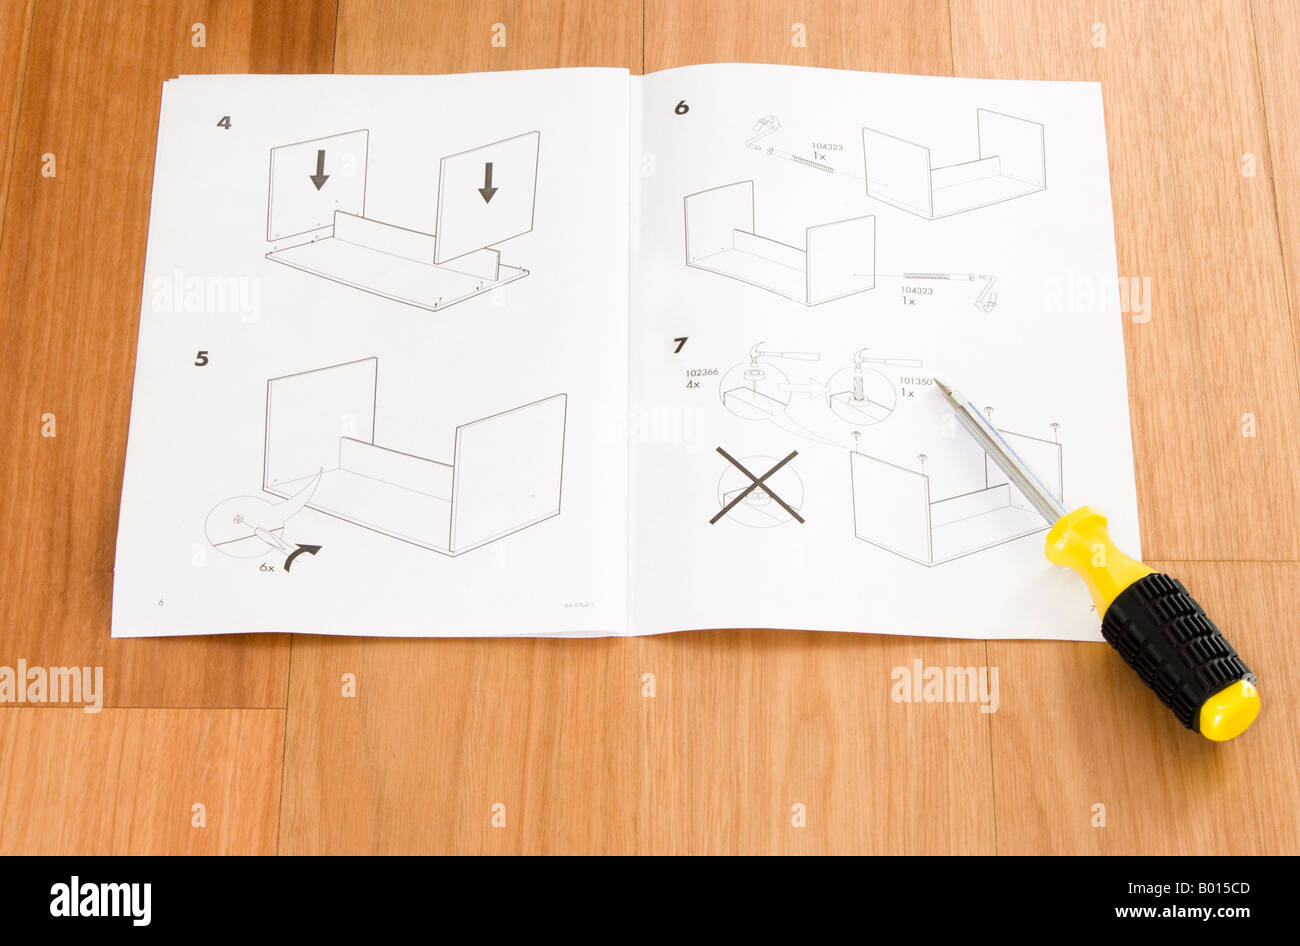 Auto-assemblage de meubles Ikea instructions et tournevis Photo Stock -  Alamy